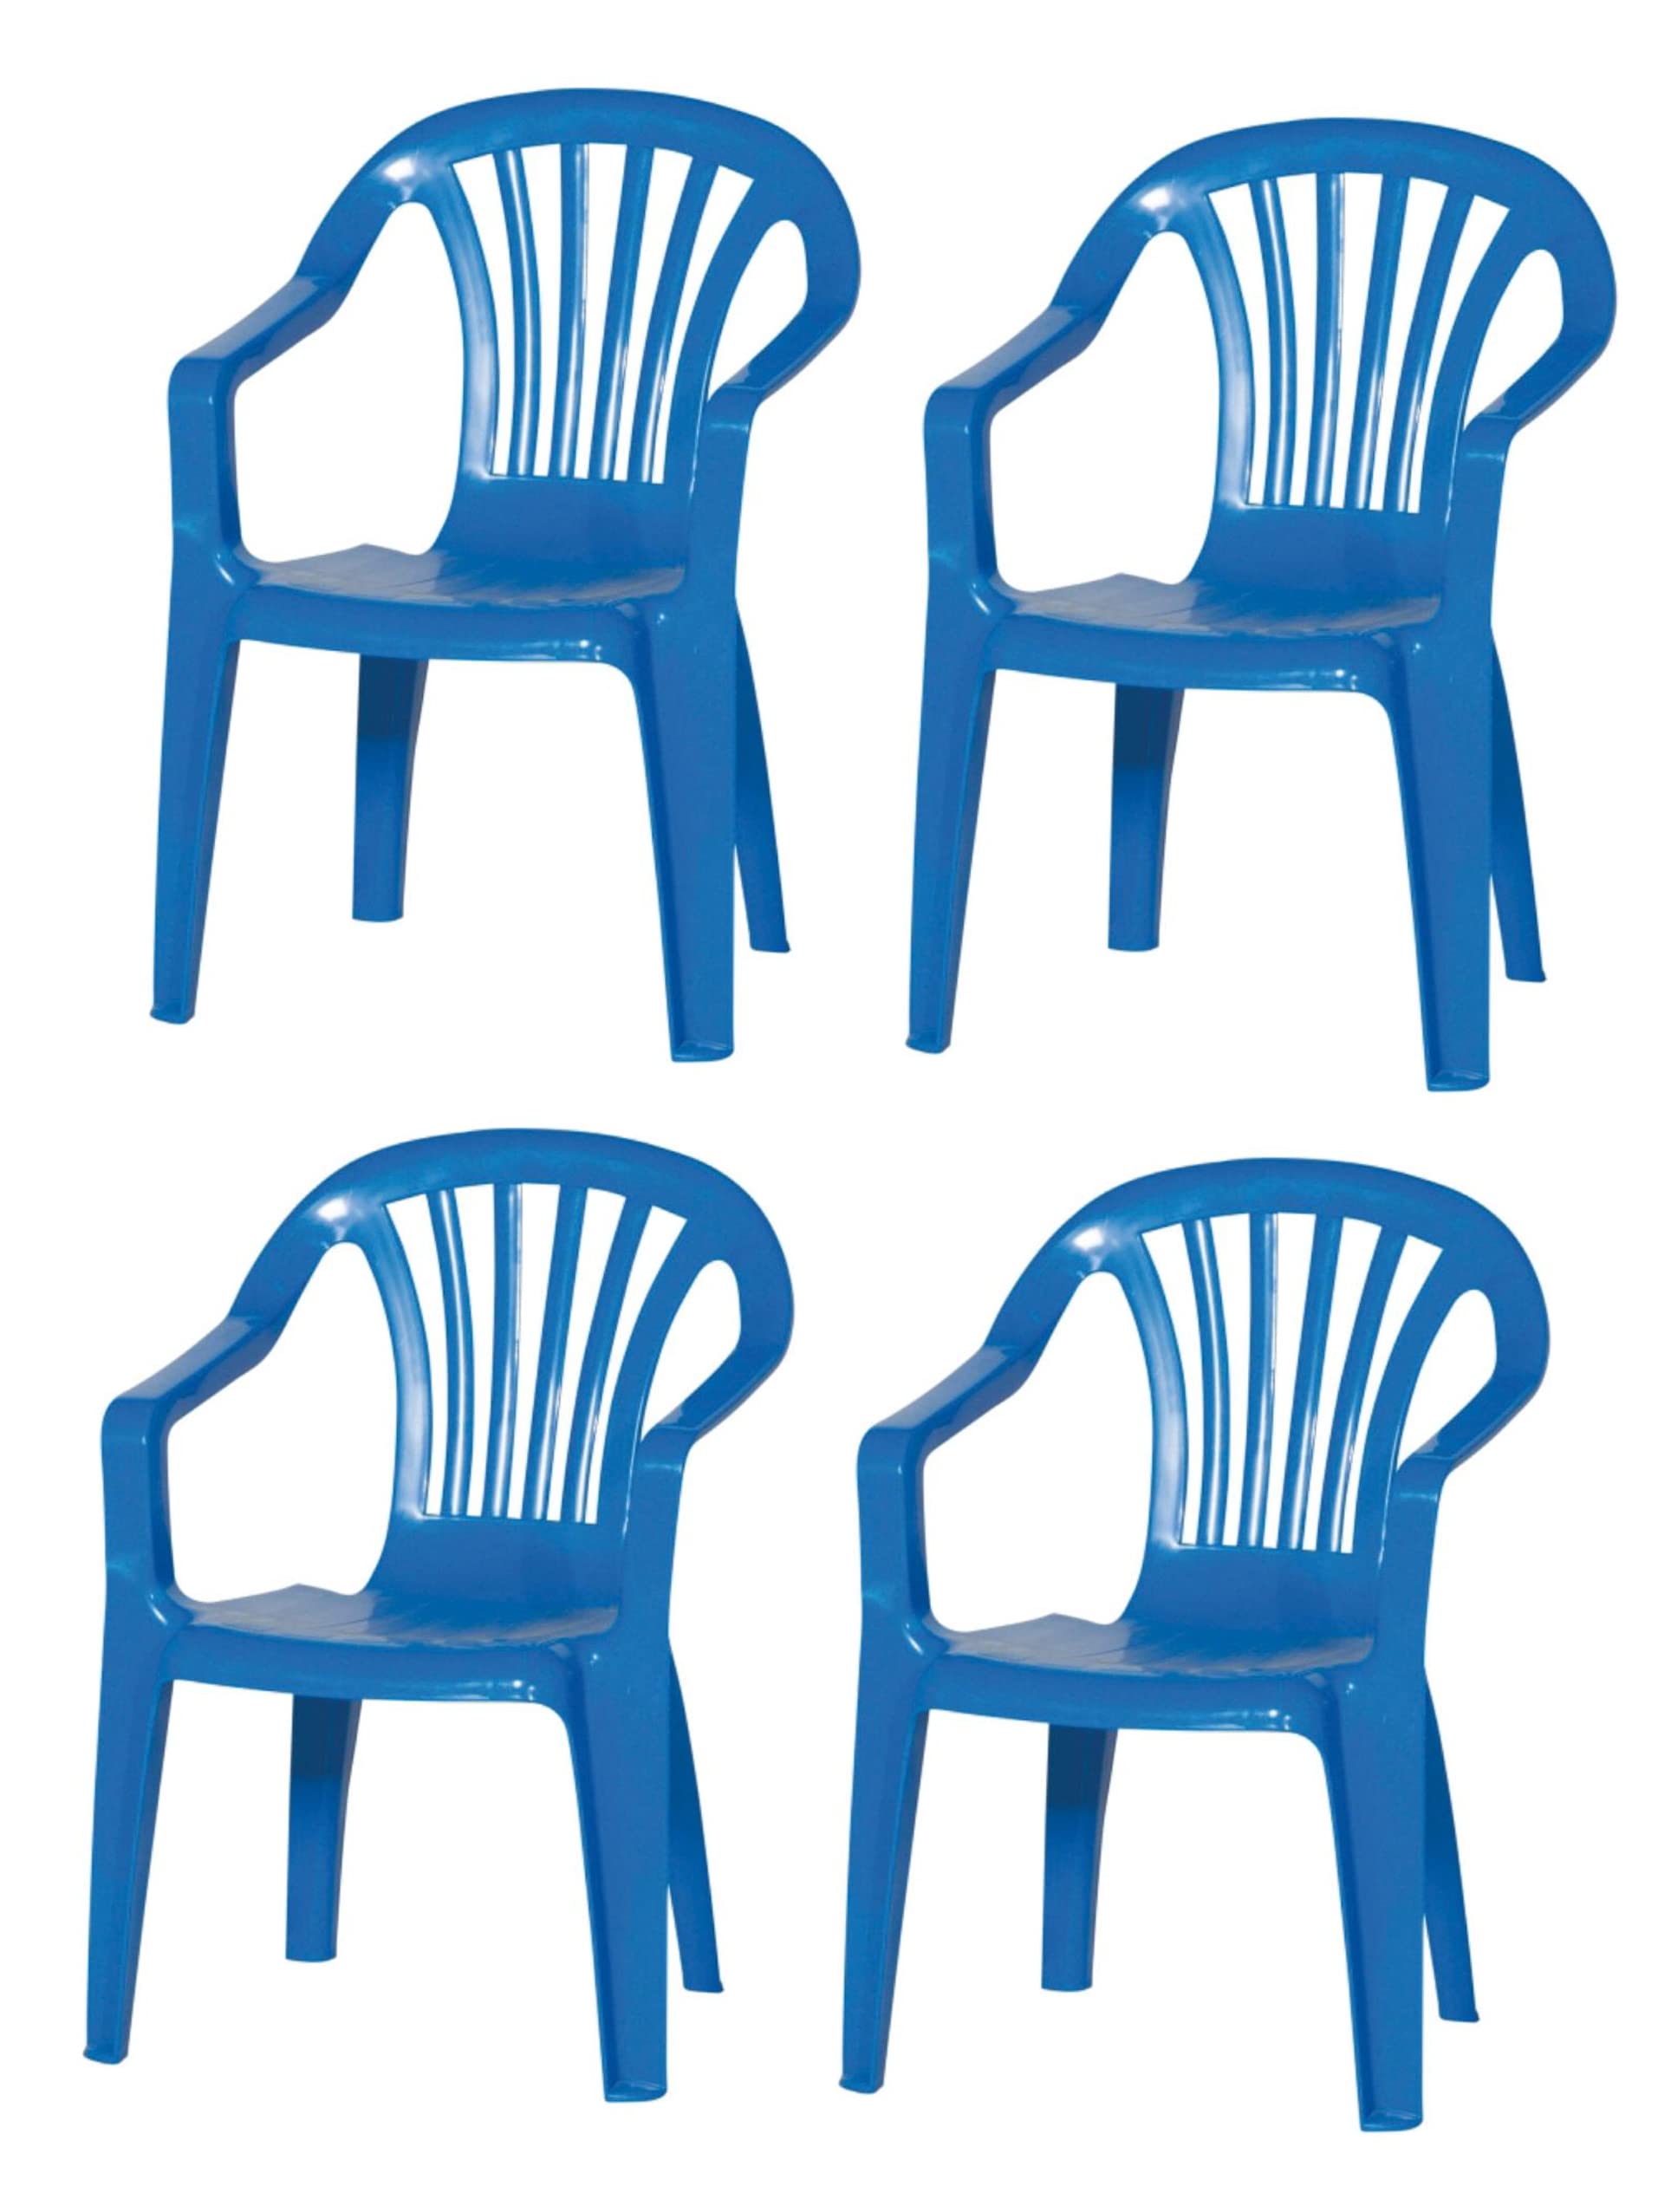 hLine Kinder Gartenstuhl Stapelsessel Sessel Stuhl für Kinder in/Out (4 Stück blau), 868446